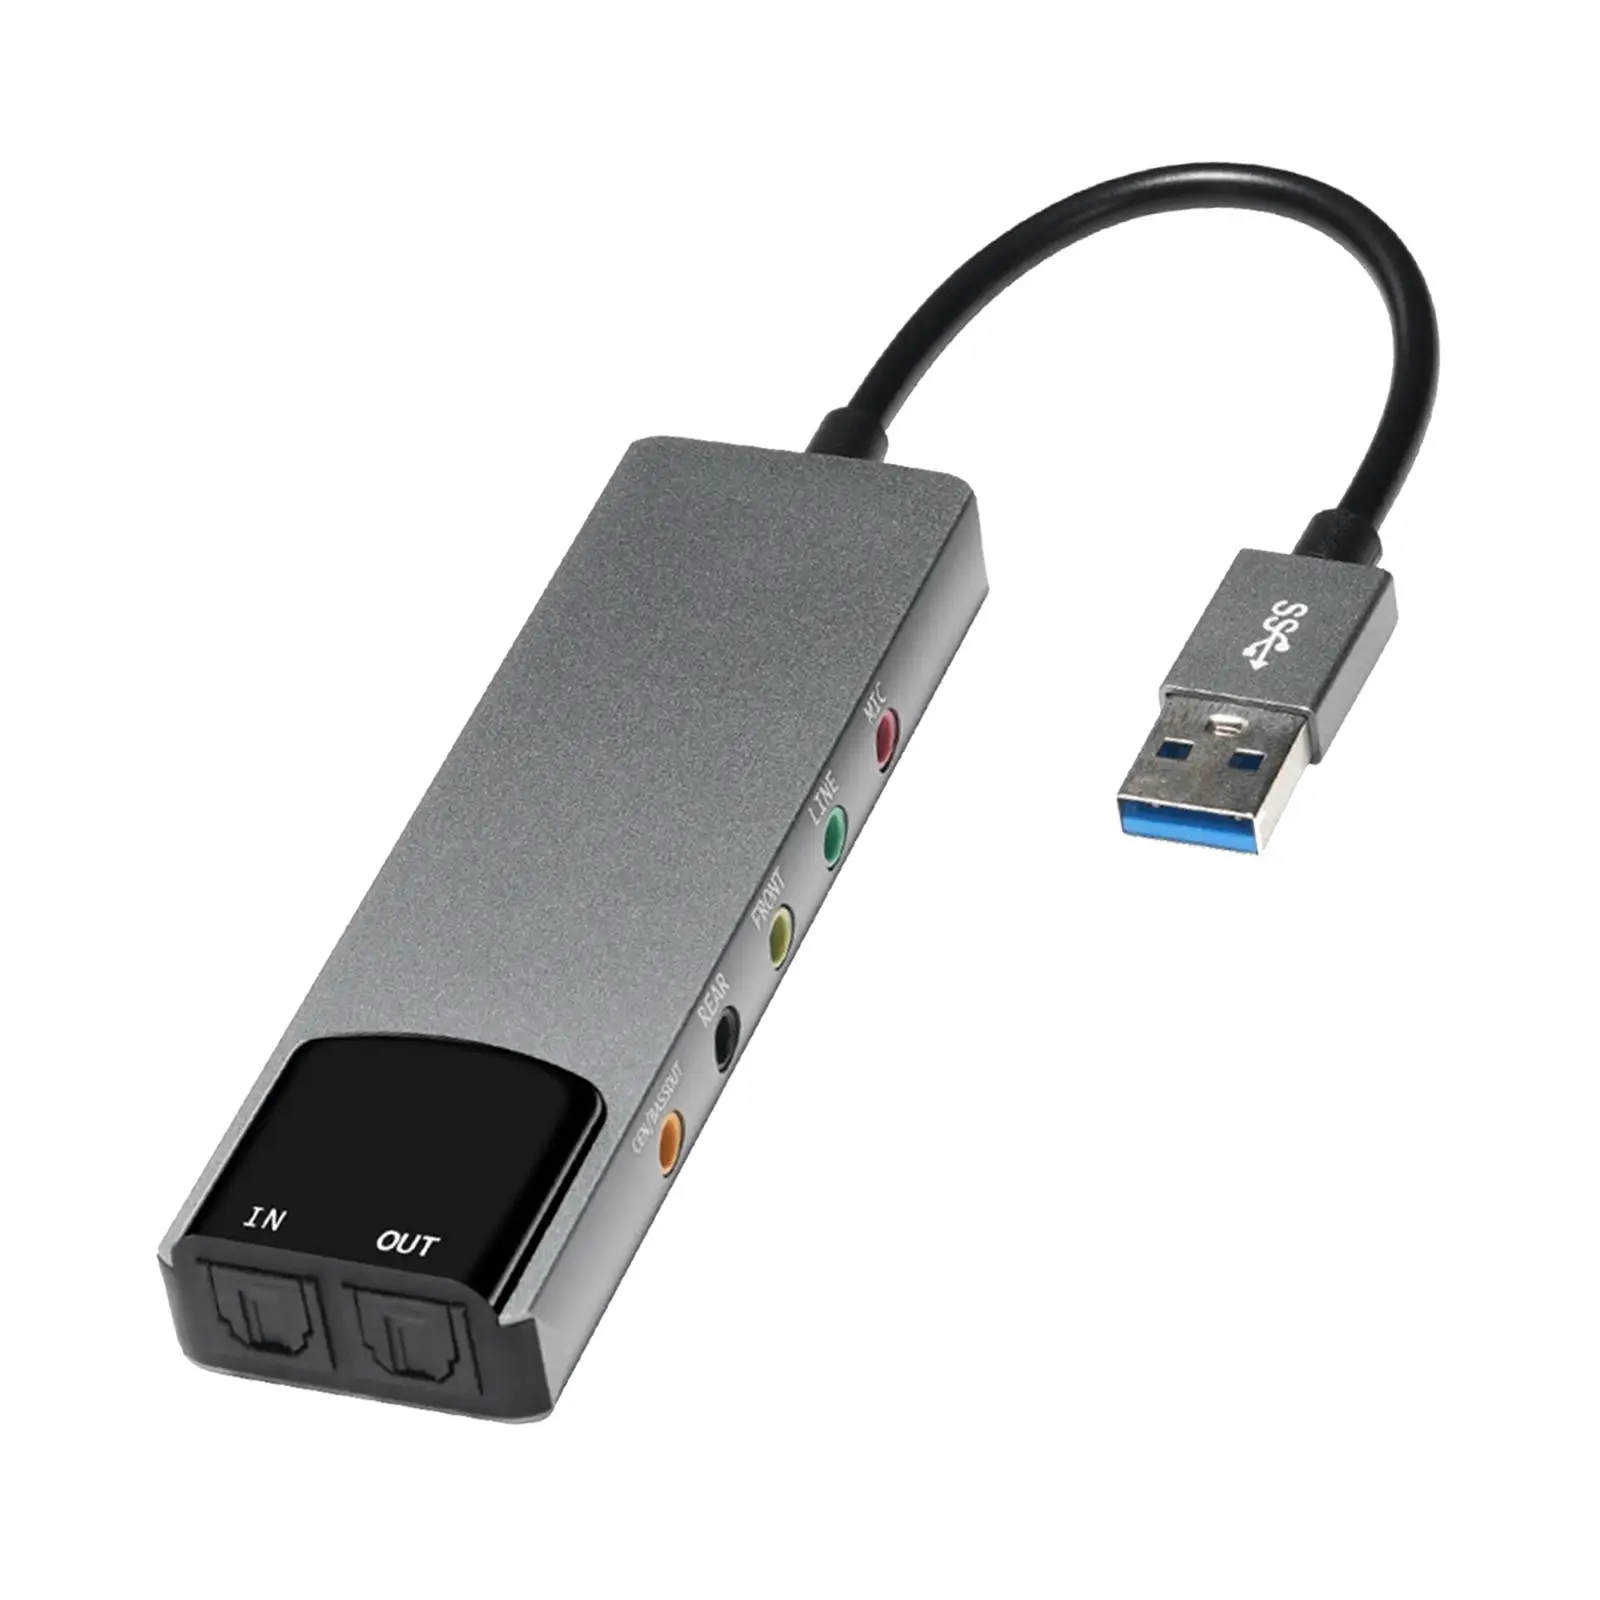 USB Sound Card Adapter High Performance External Audio Converter External Audio Adapter USB Audio Adapter for Laptops Desktops